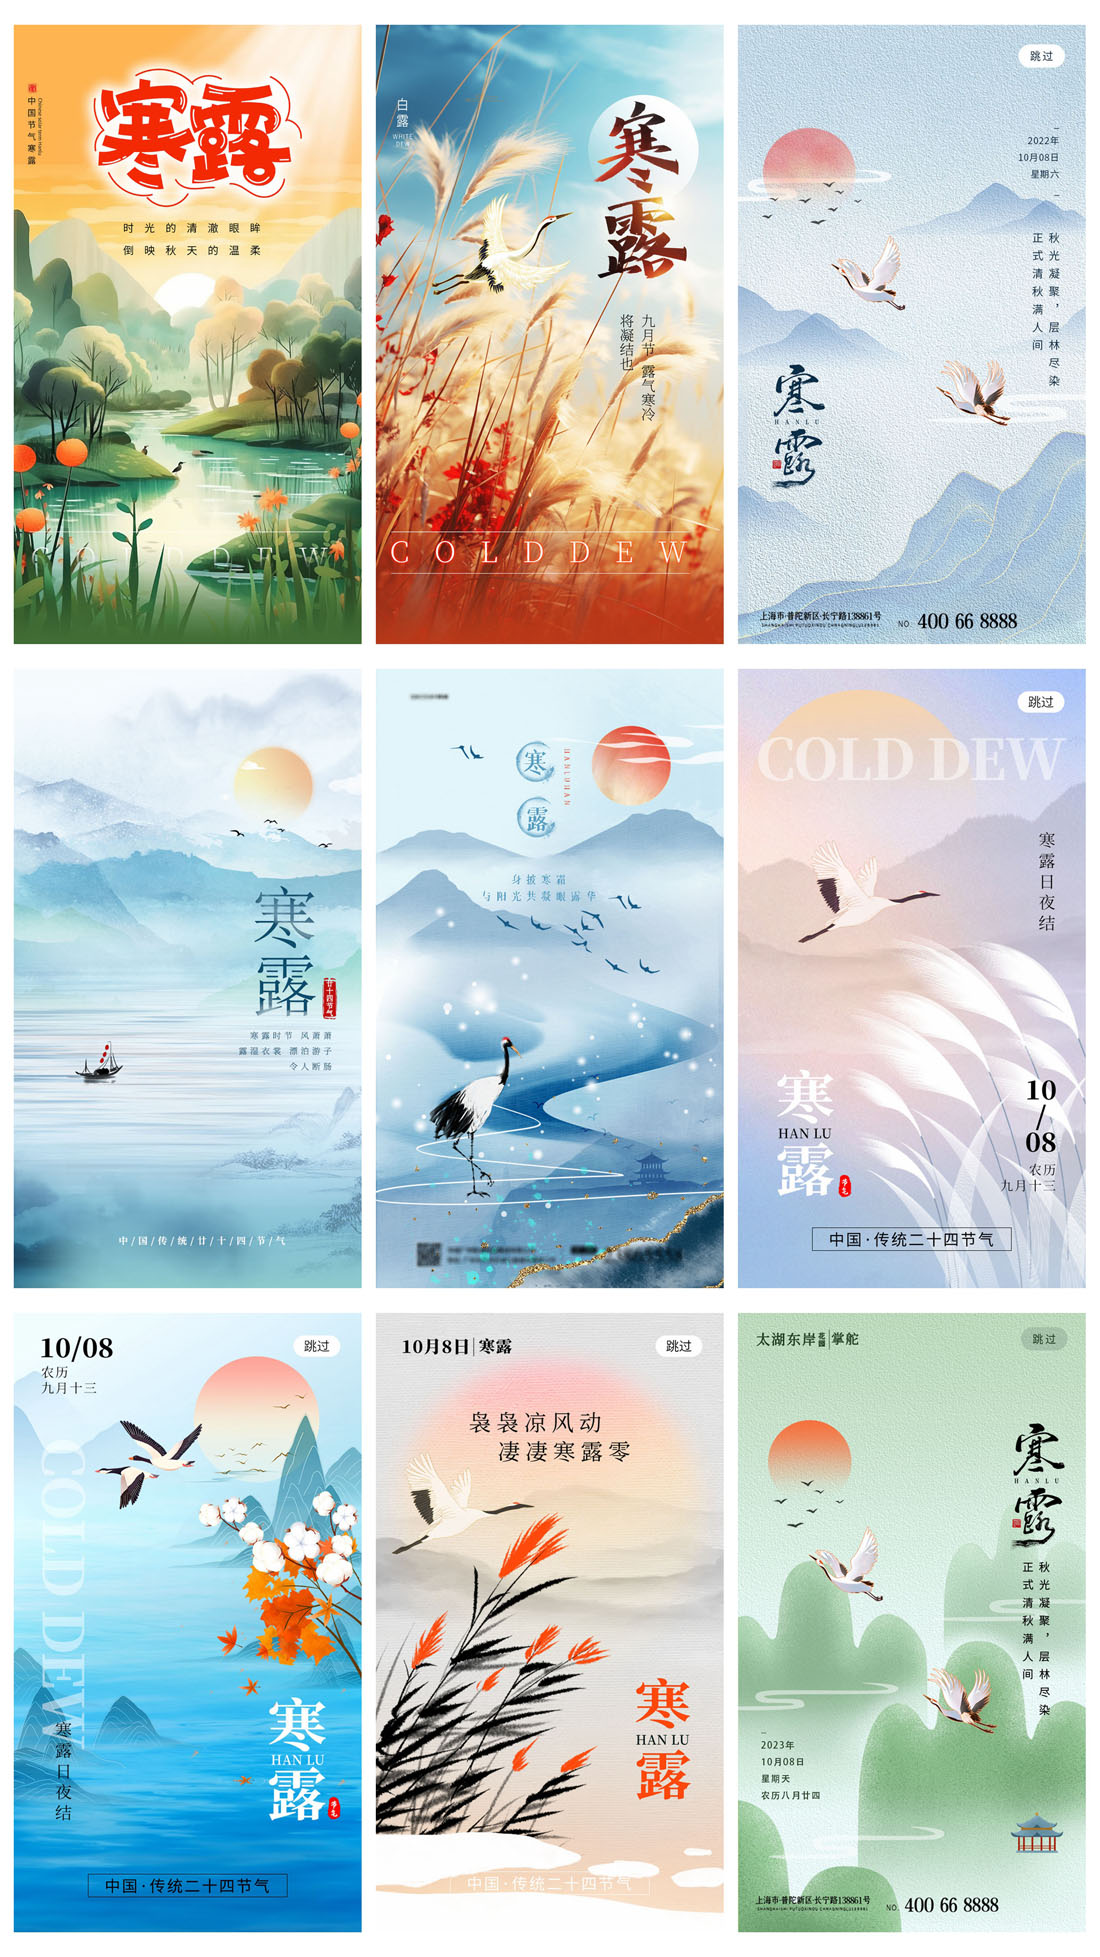 94款中国传统二十四节气之寒露节日海报PSD模板 设计素材 第18张